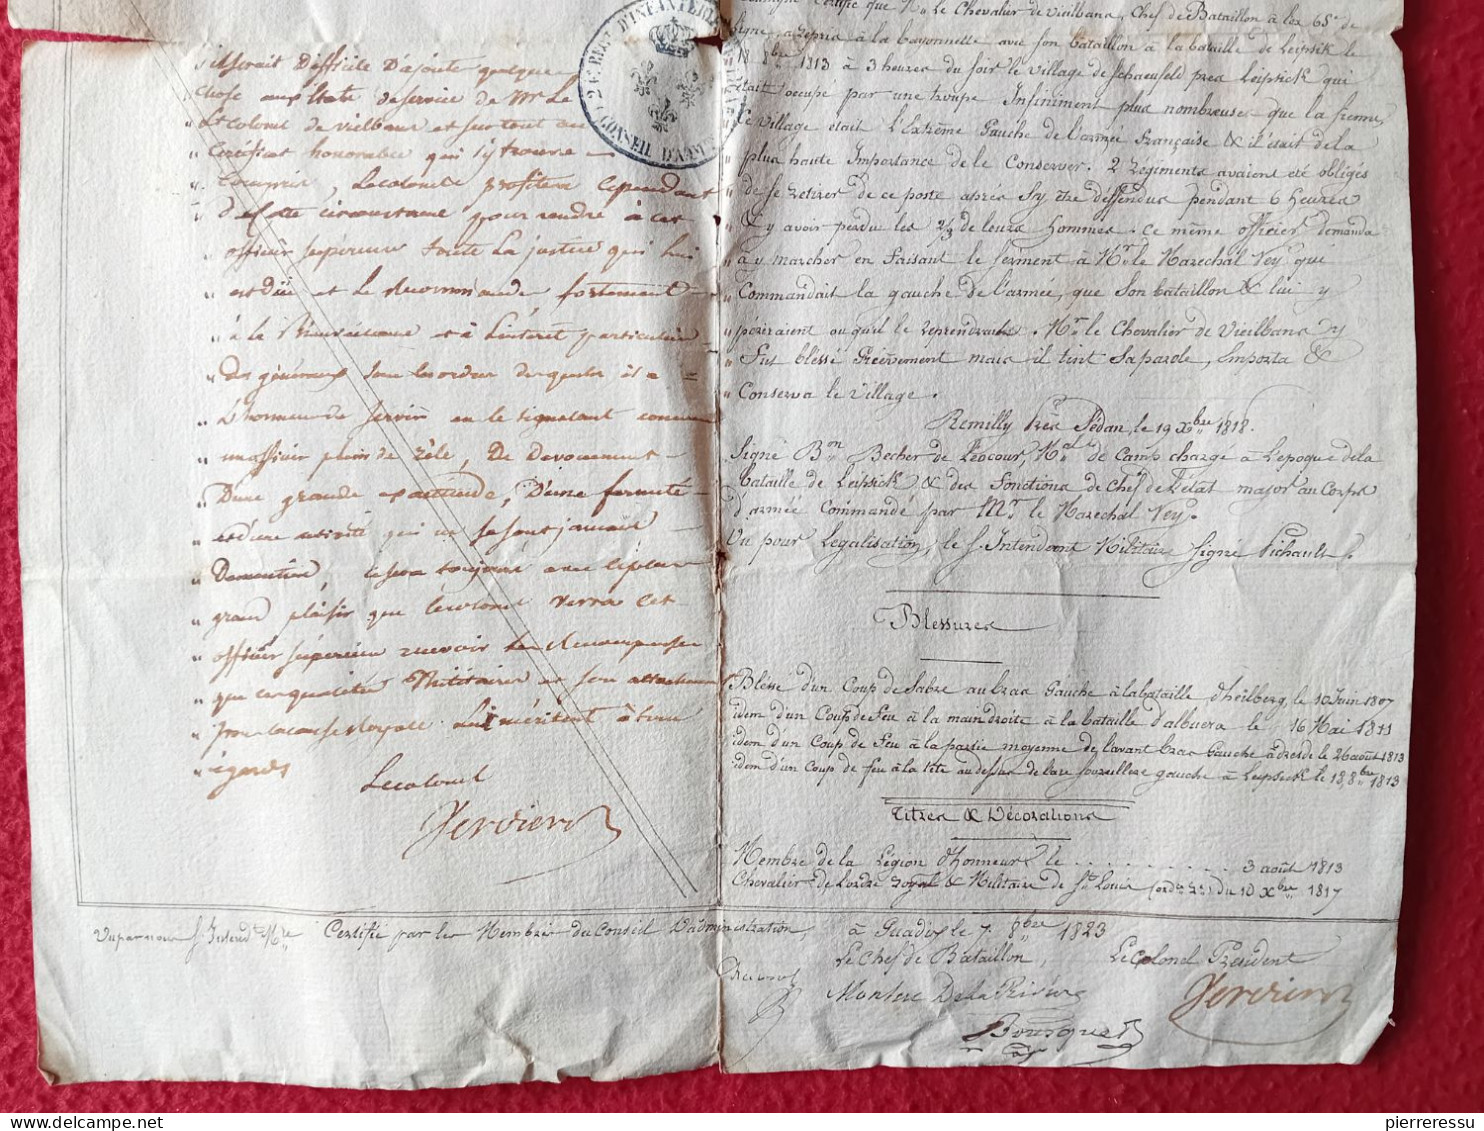 DIPOLME BREVET CERTIFICAT GARDE IMPERIALE VIEILBANS JACQUES 1823 A GUADIX EXPEDITION D ESPAGNE AUTOGRAPHES - Documents